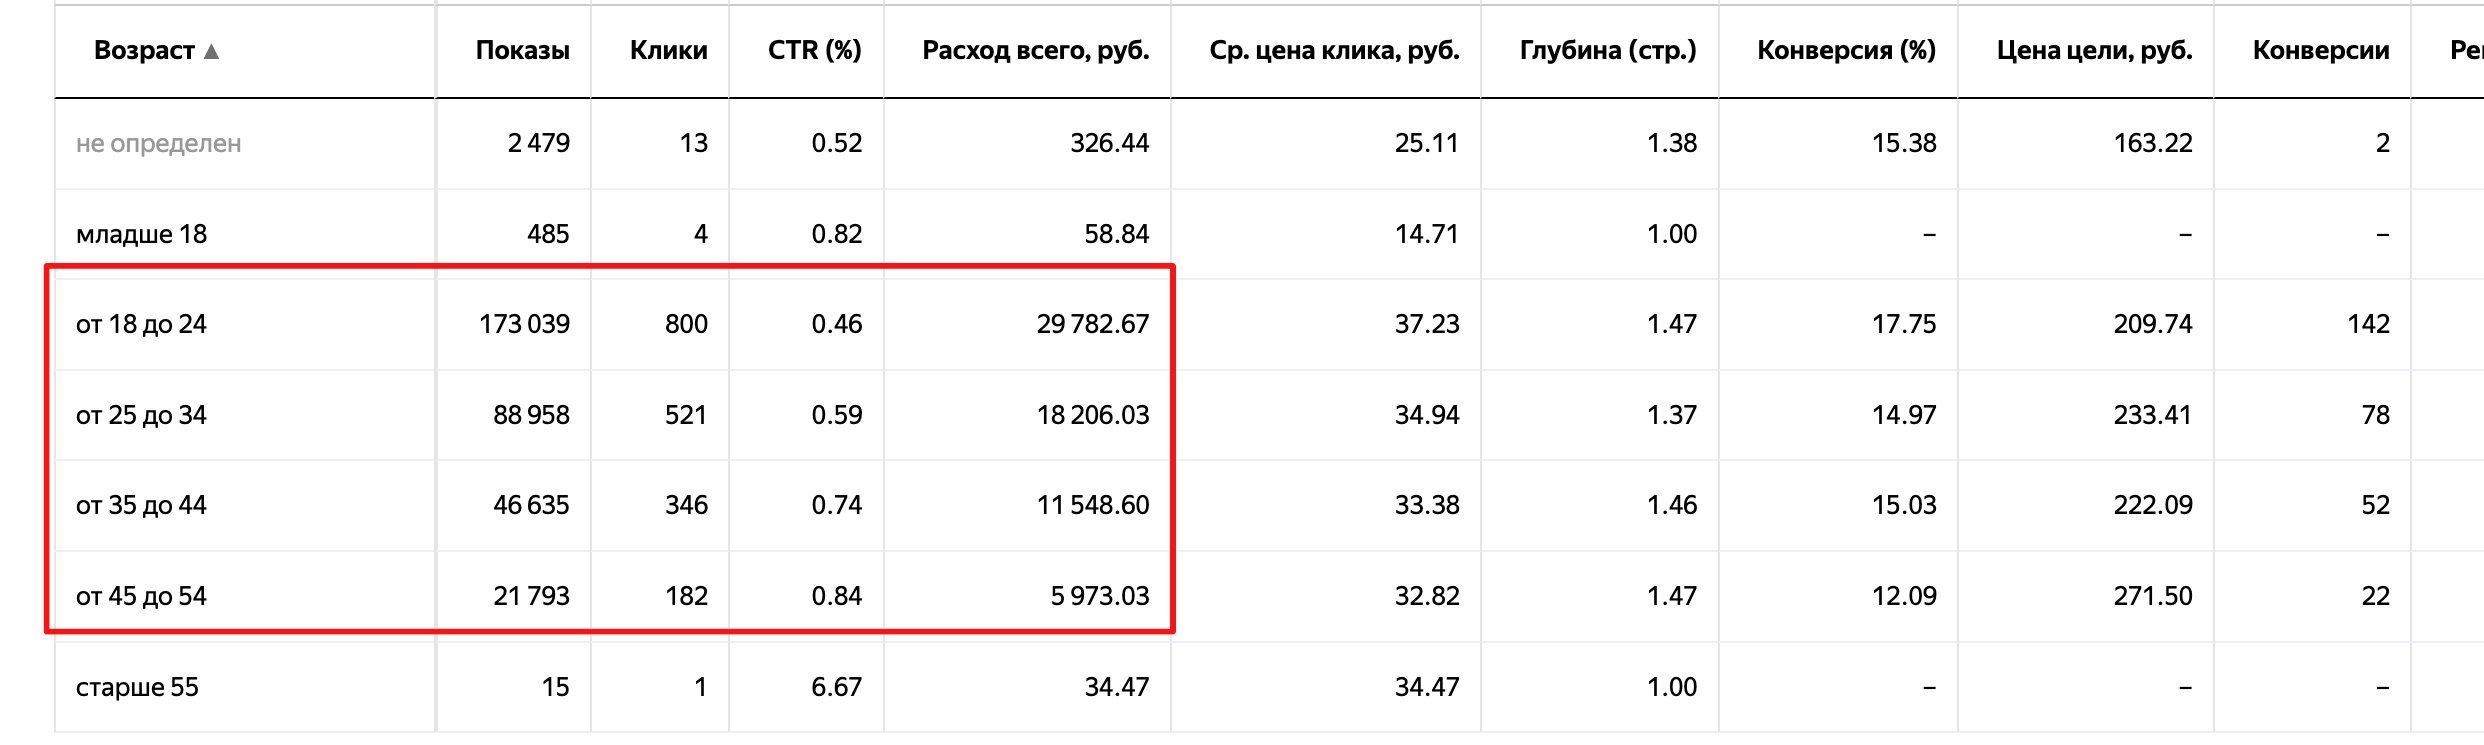 Распределение возраста в Яндекс Директ